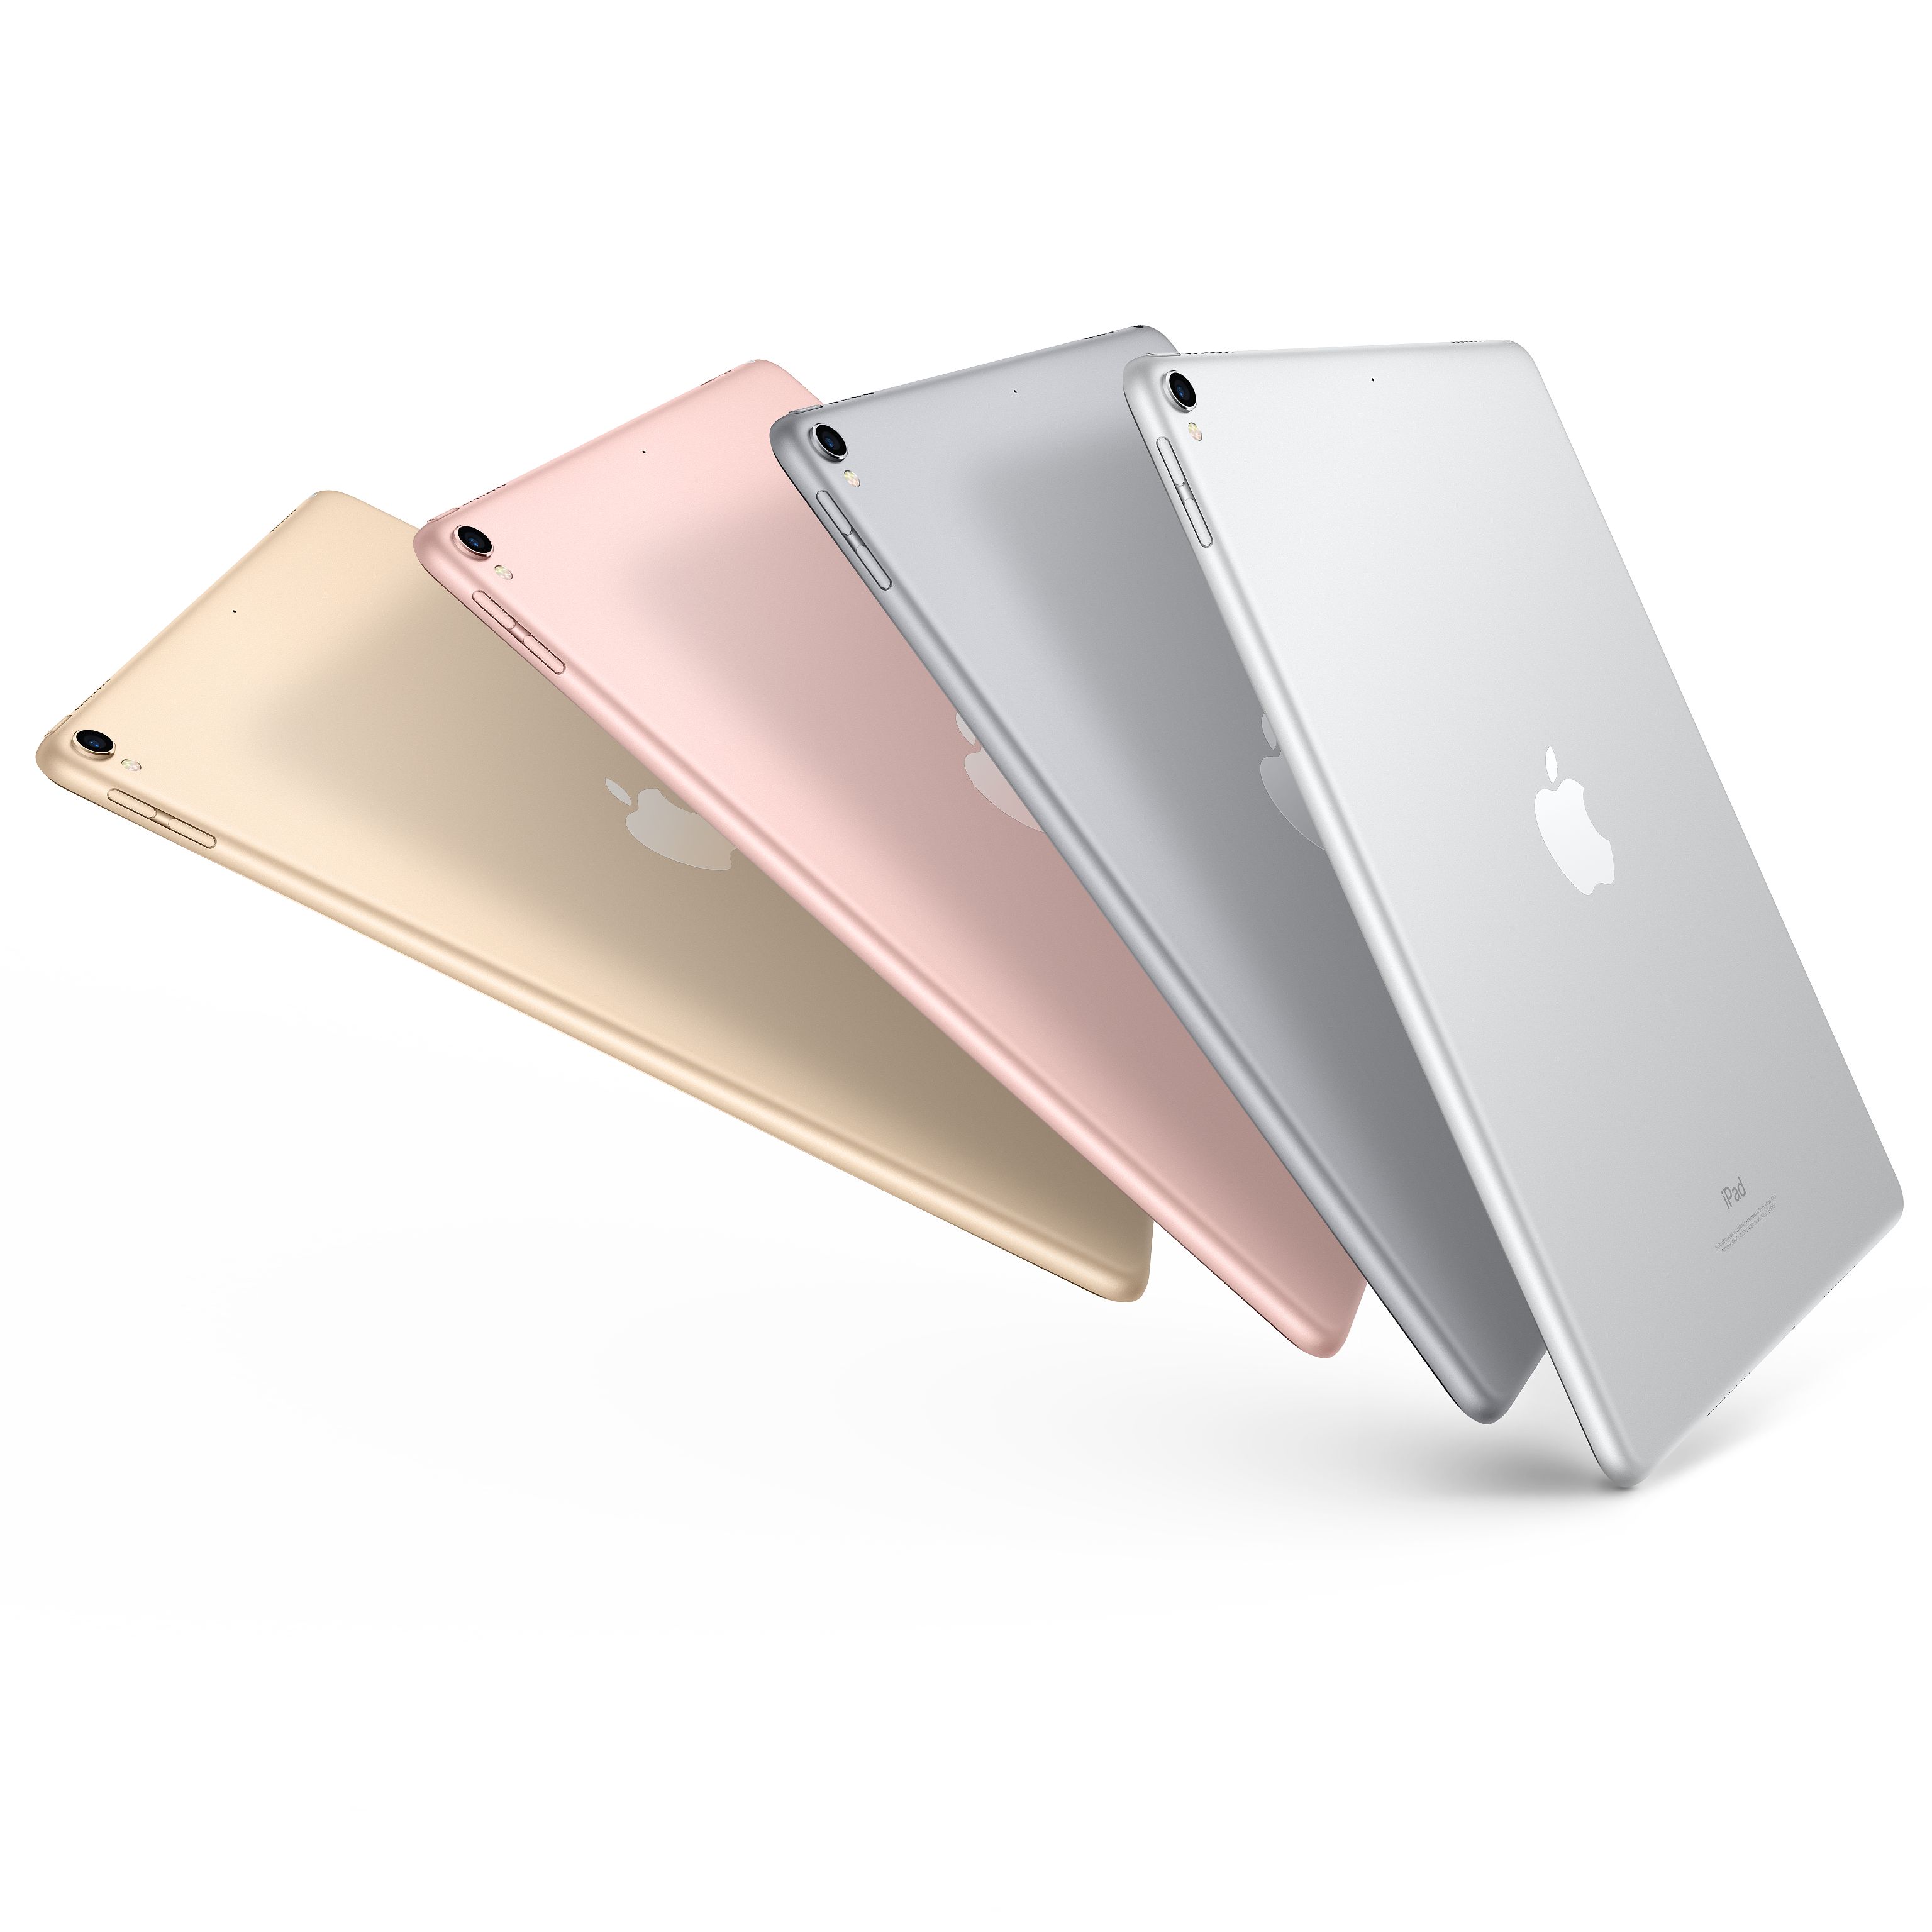 苹果(Apple) iPad pro 新款12.9英寸平板电脑 银色64GB WLAN版MQDC2CH/A